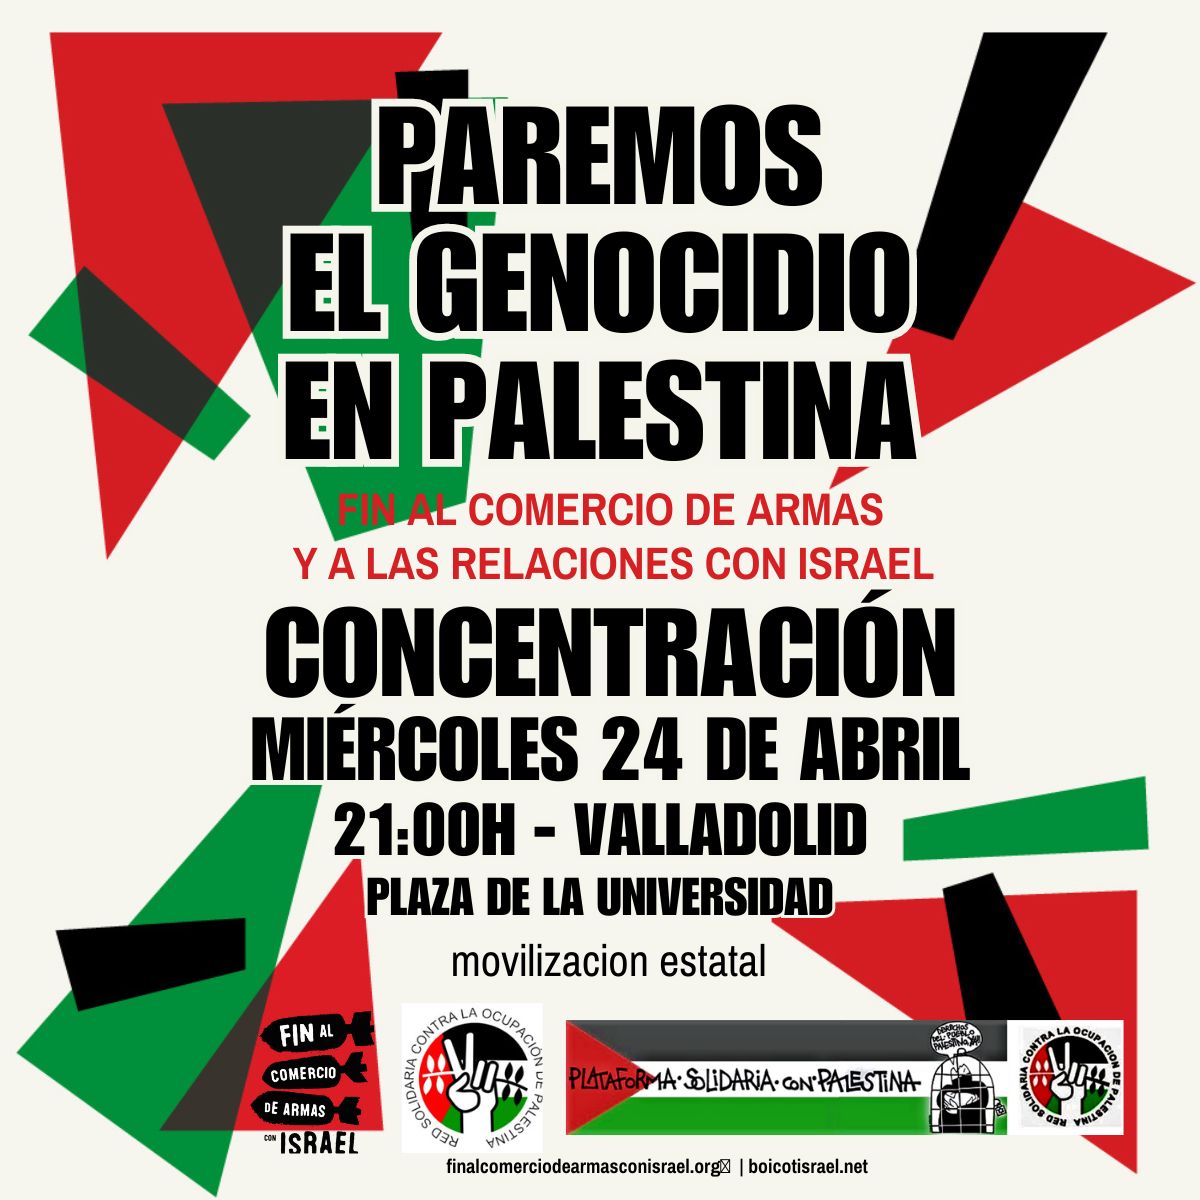 🇵🇸 @VallaPalestina se suma al 4º Día de Movilización Estatal contra genocidio en Palestina 🇵🇸
📢 CONCENTRACIÓN
🗓 miércoles 24
🕘 21:00 📍Plaza de la Universidad de #Valladolid 
¡Ya somos 96 municipios!
¡Libertad presas palestinas!
#ValladolidconPalestina 
#FreePalestine